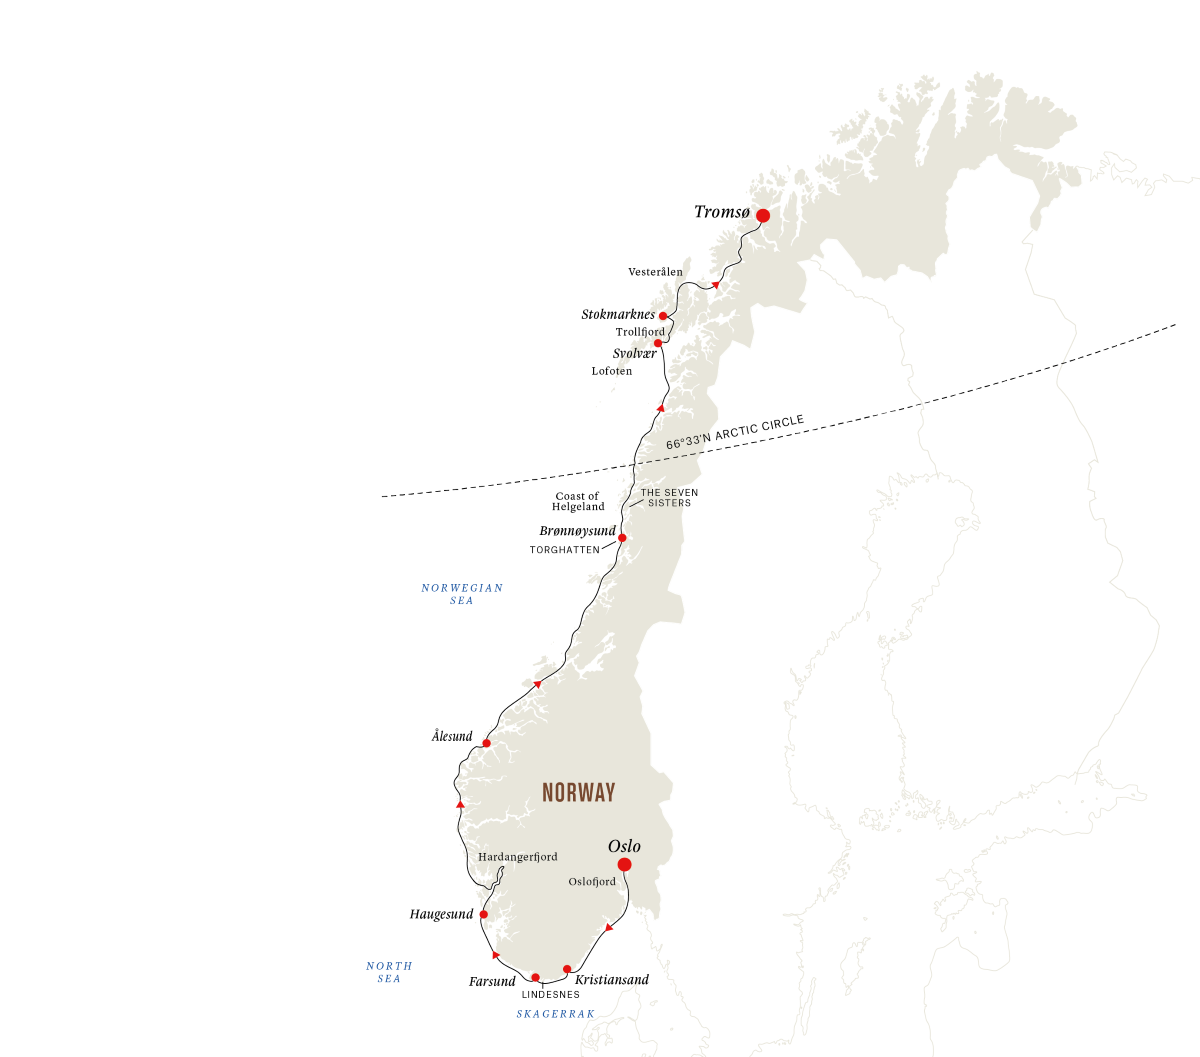 Visit Tromsø and the Arctic Circle